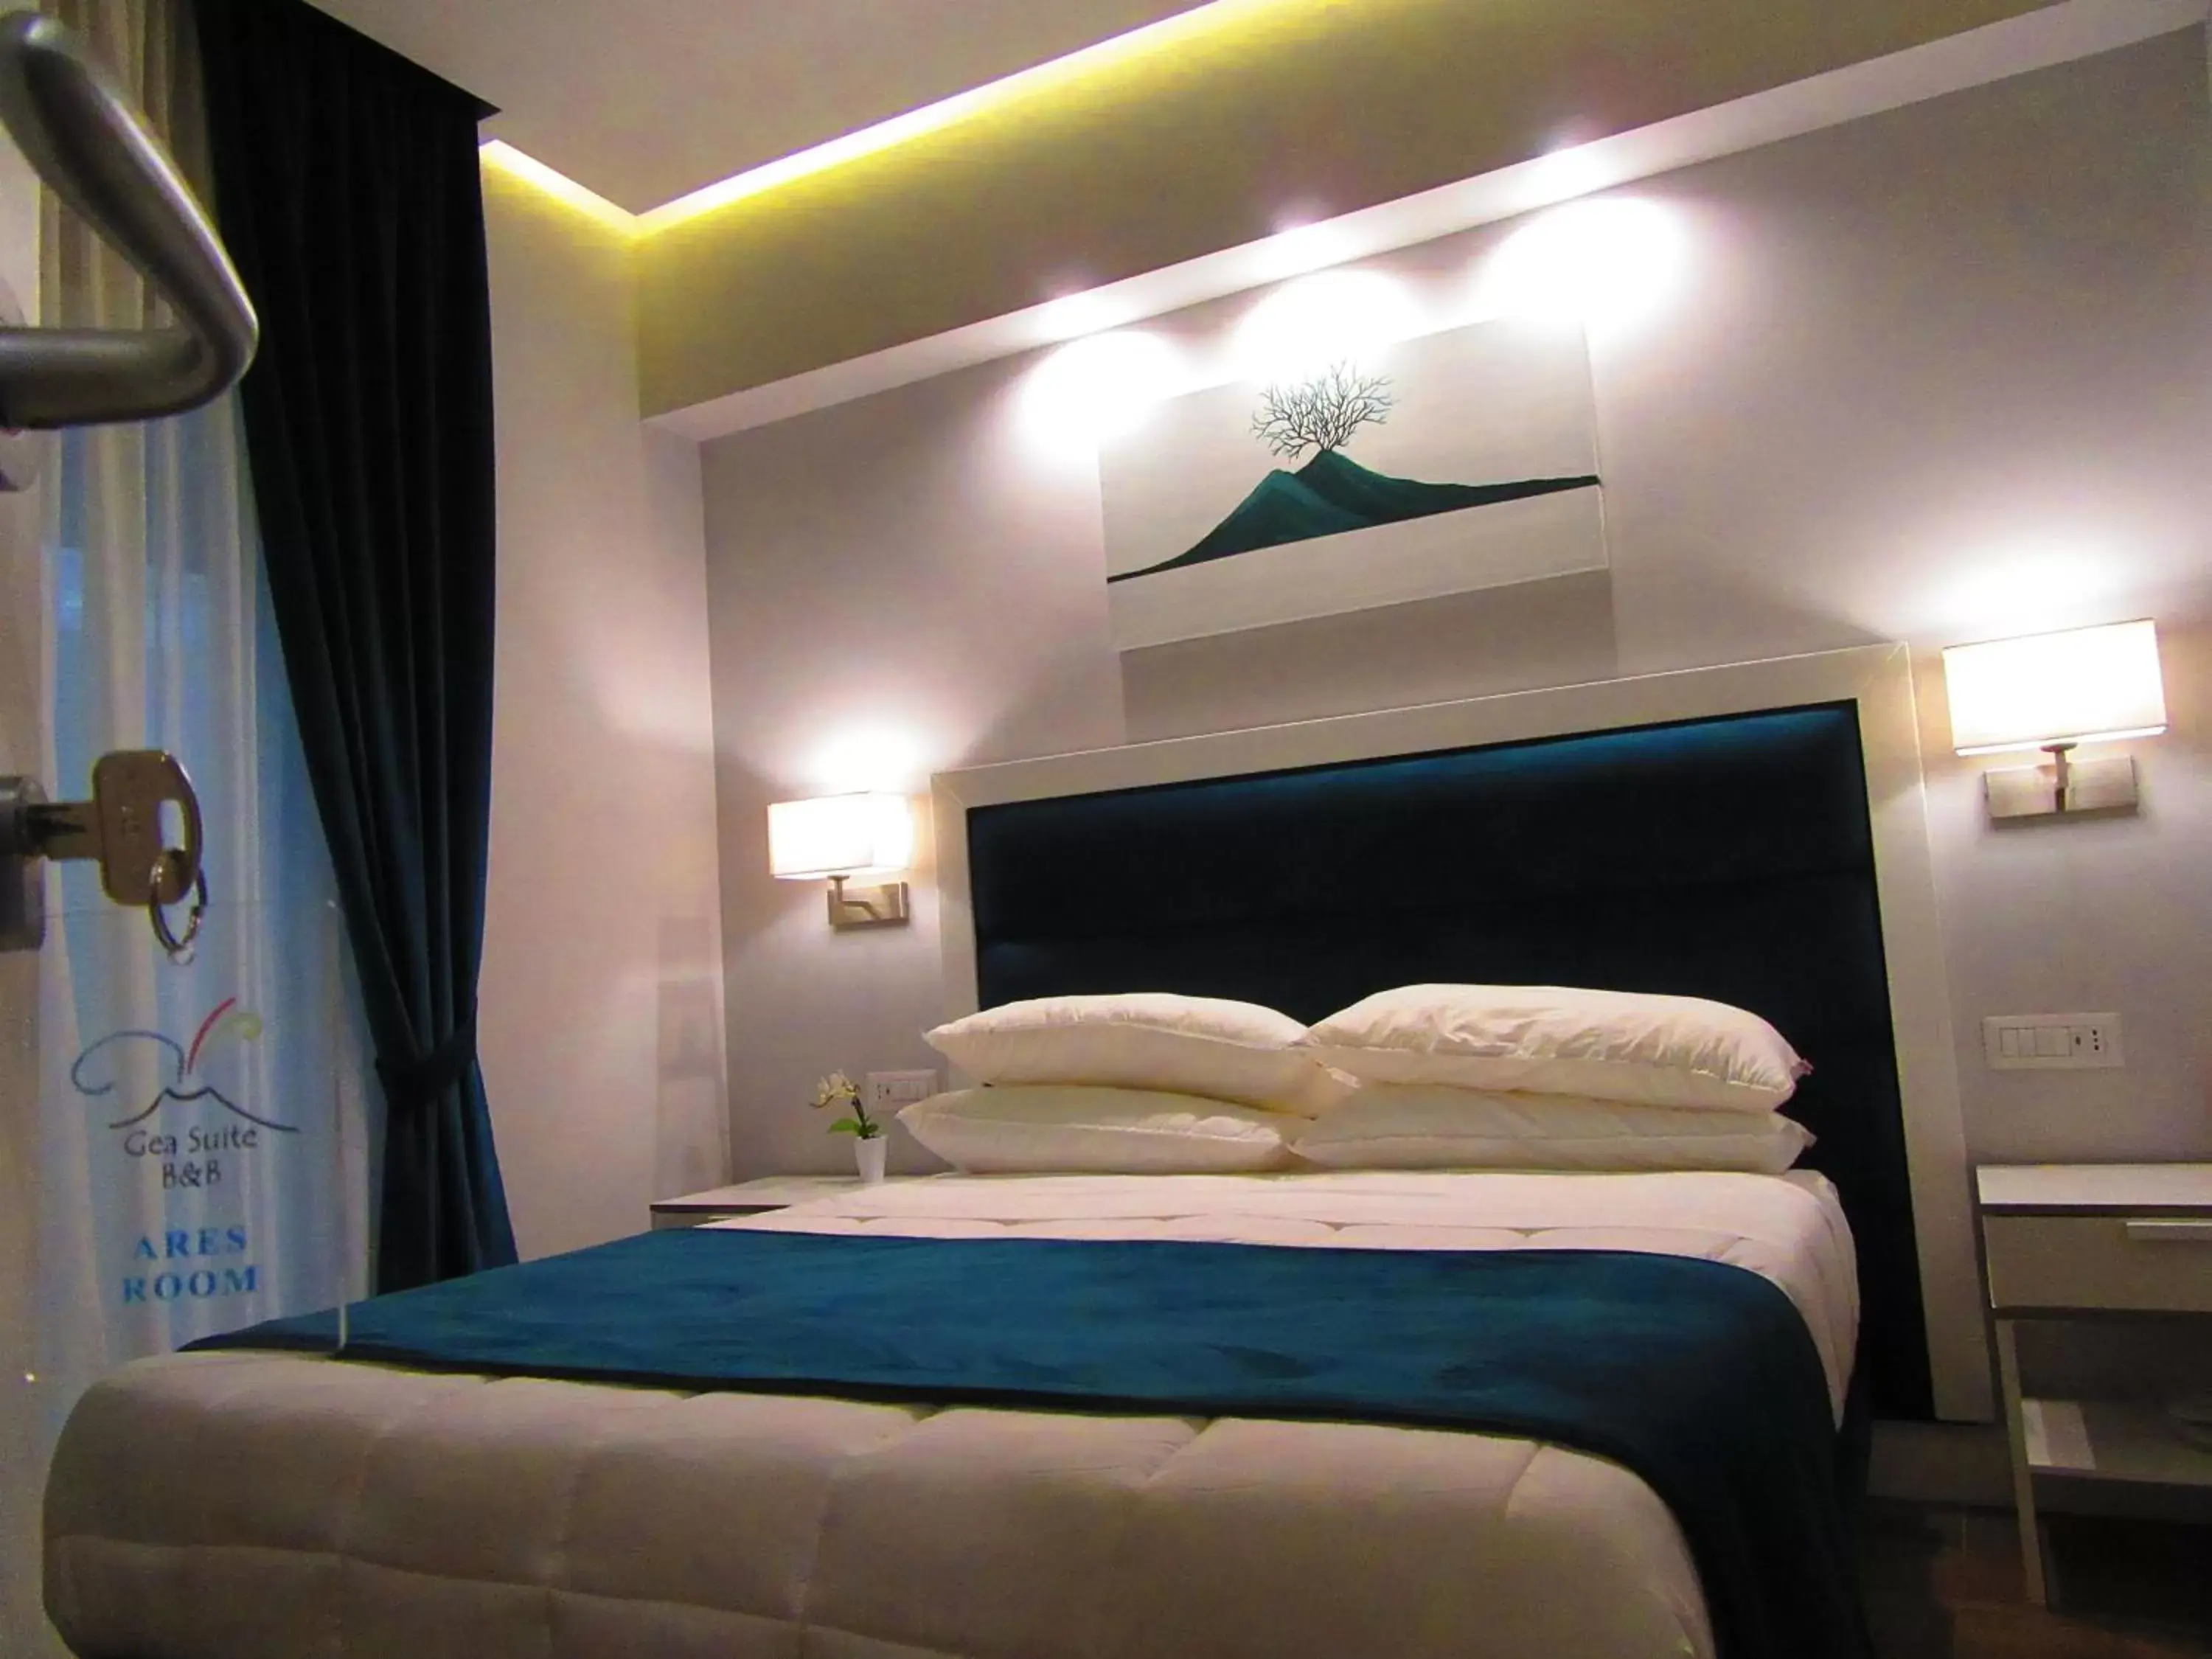 Bedroom, Bed in Gea suite